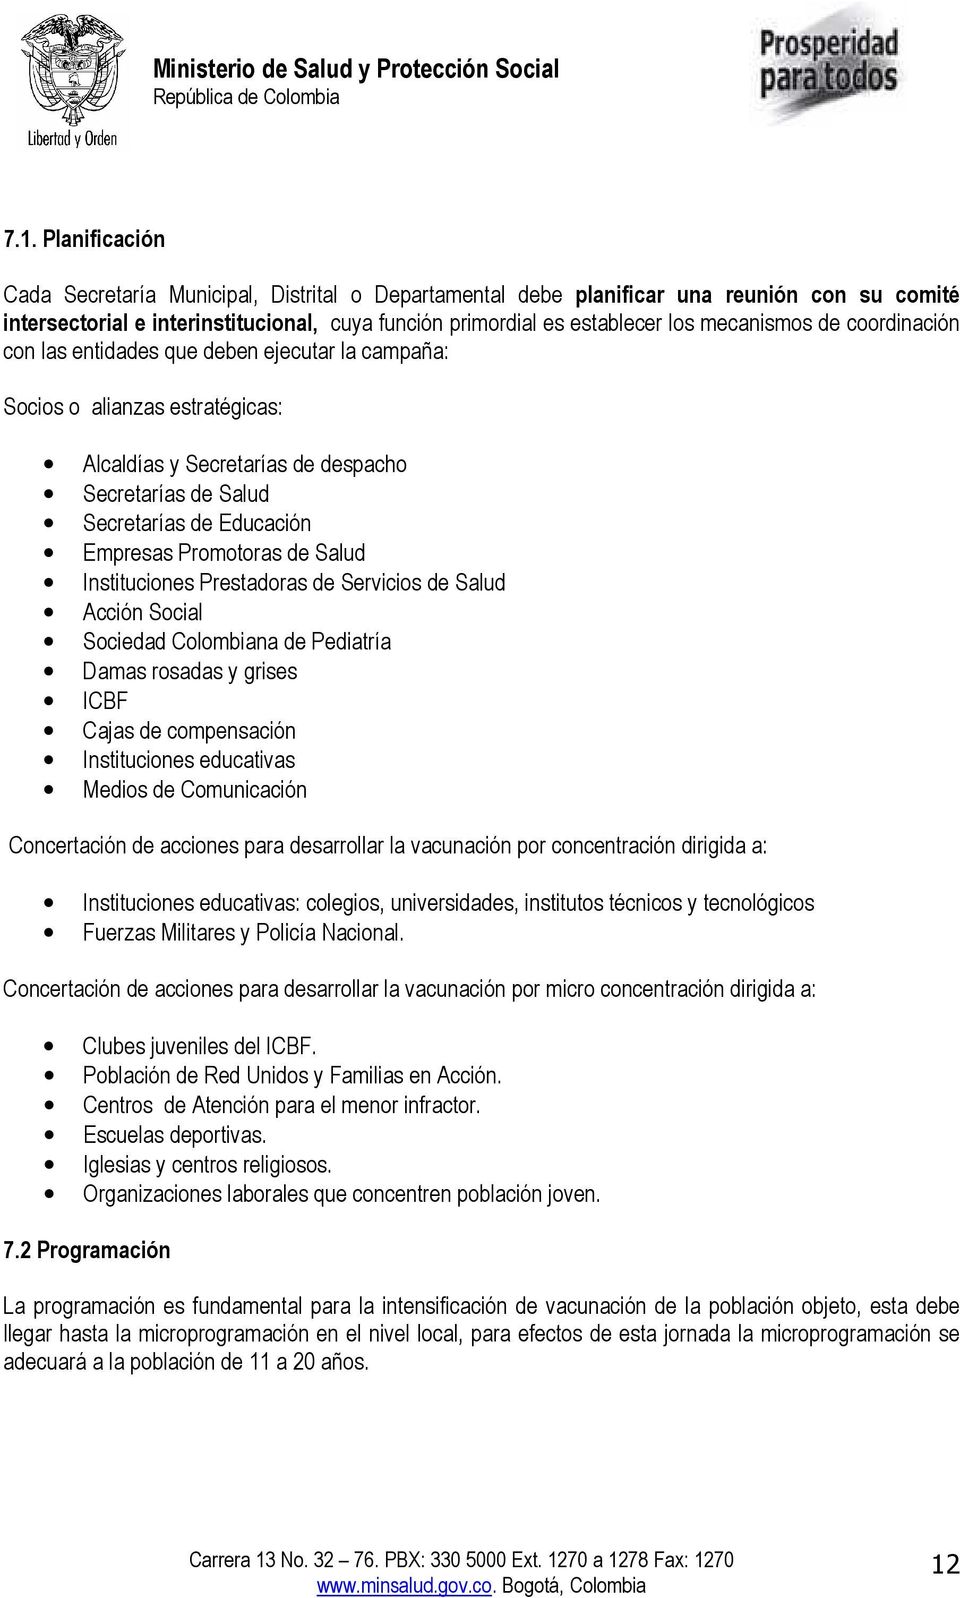 Promotoras de Salud Instituciones Prestadoras de Servicios de Salud Acción Social Sociedad Colombiana de Pediatría Damas rosadas y grises ICBF Cajas de compensación Instituciones educativas Medios de